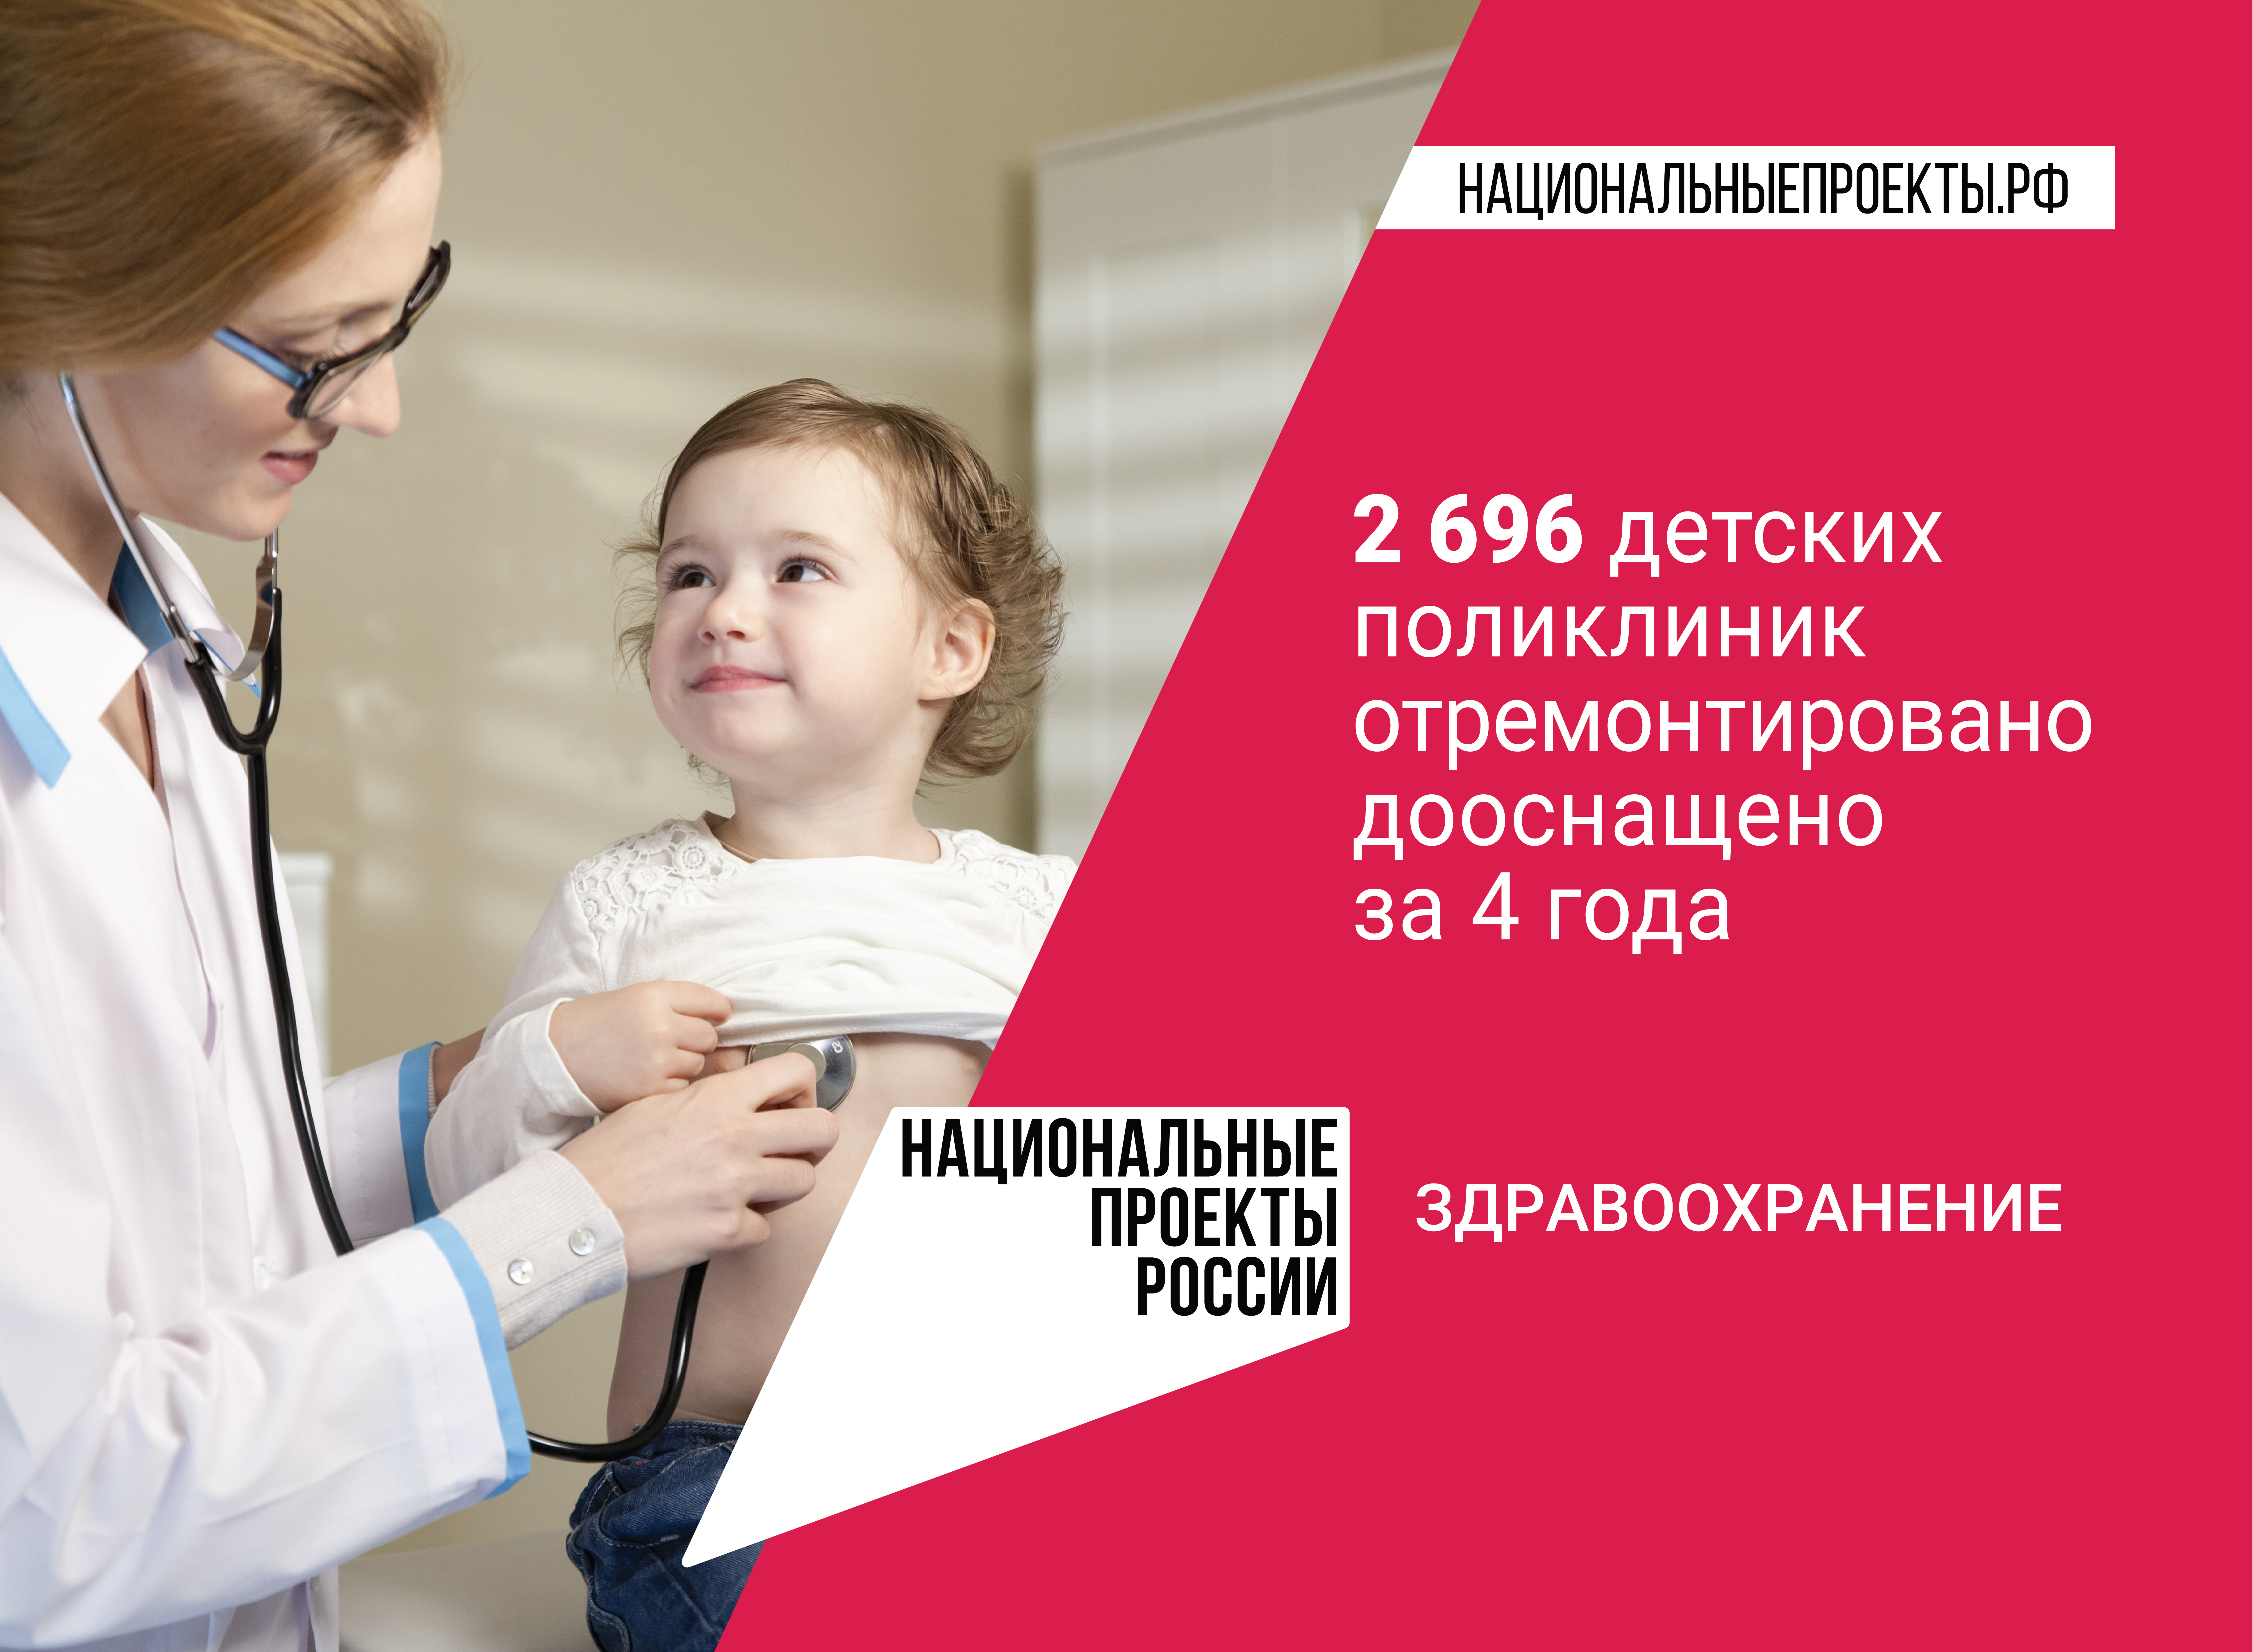 Национальные проекты России: «Здравоохранение»